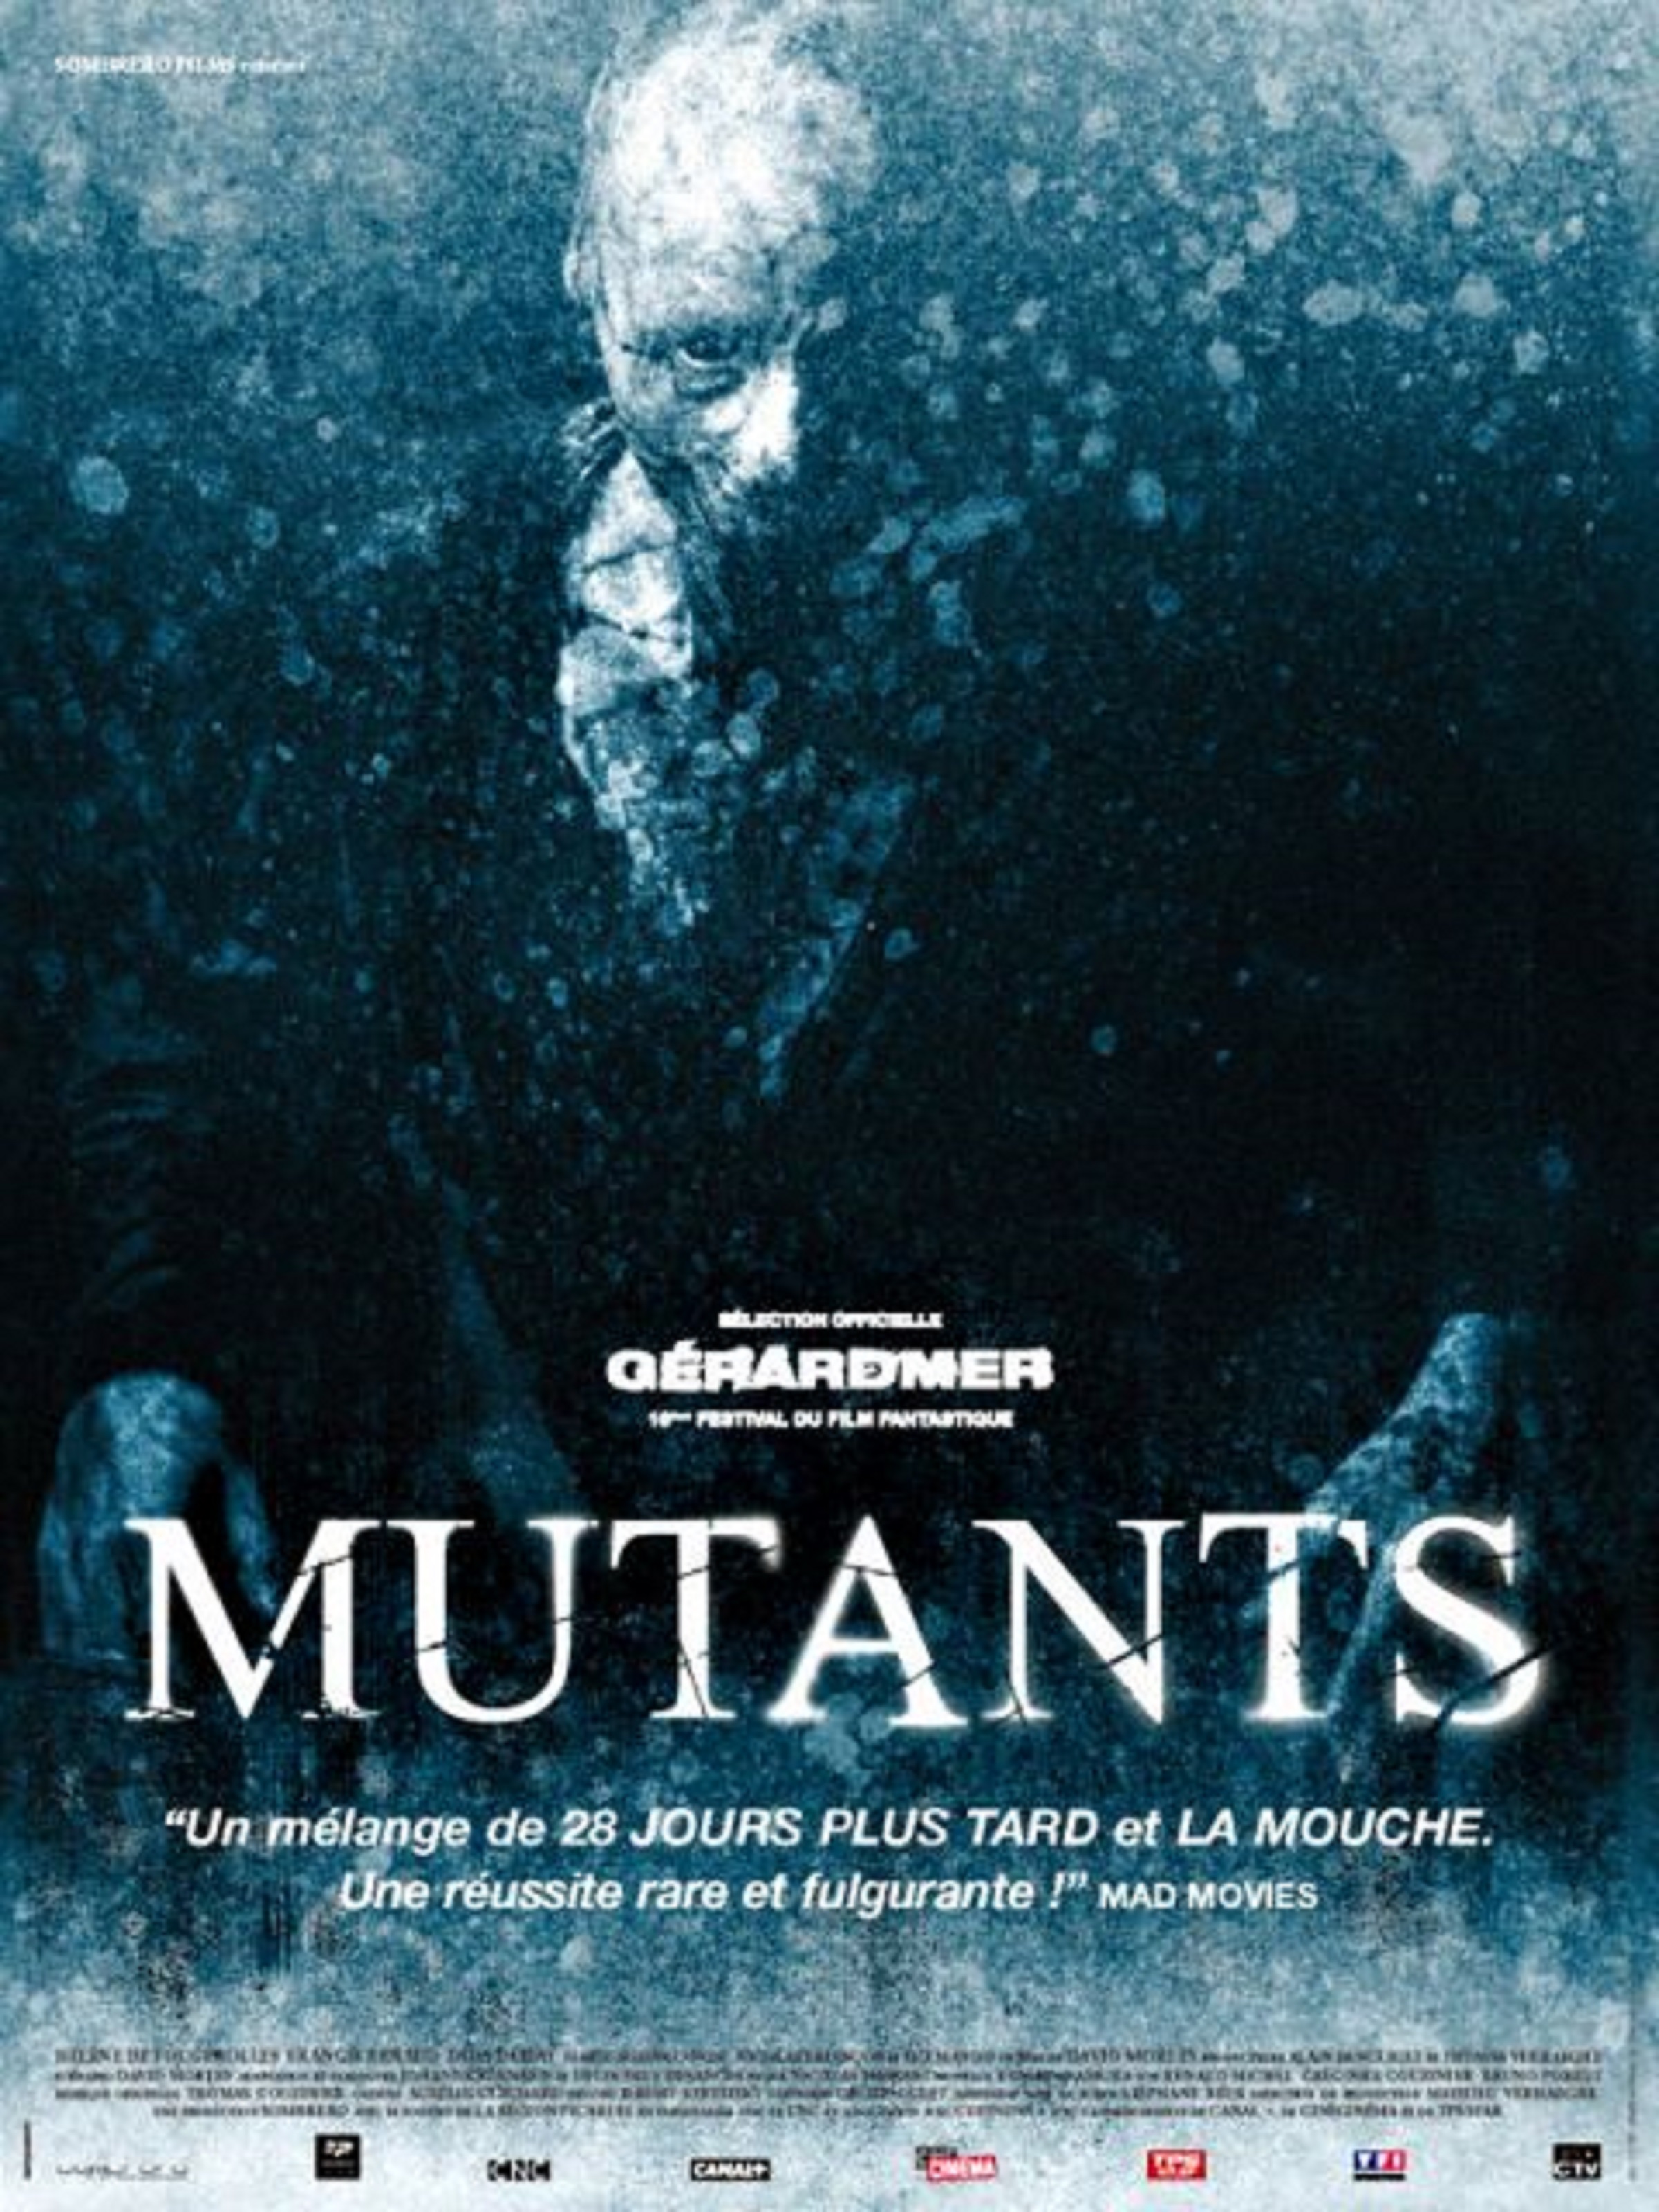 Mutants (2009) Screenshot 4